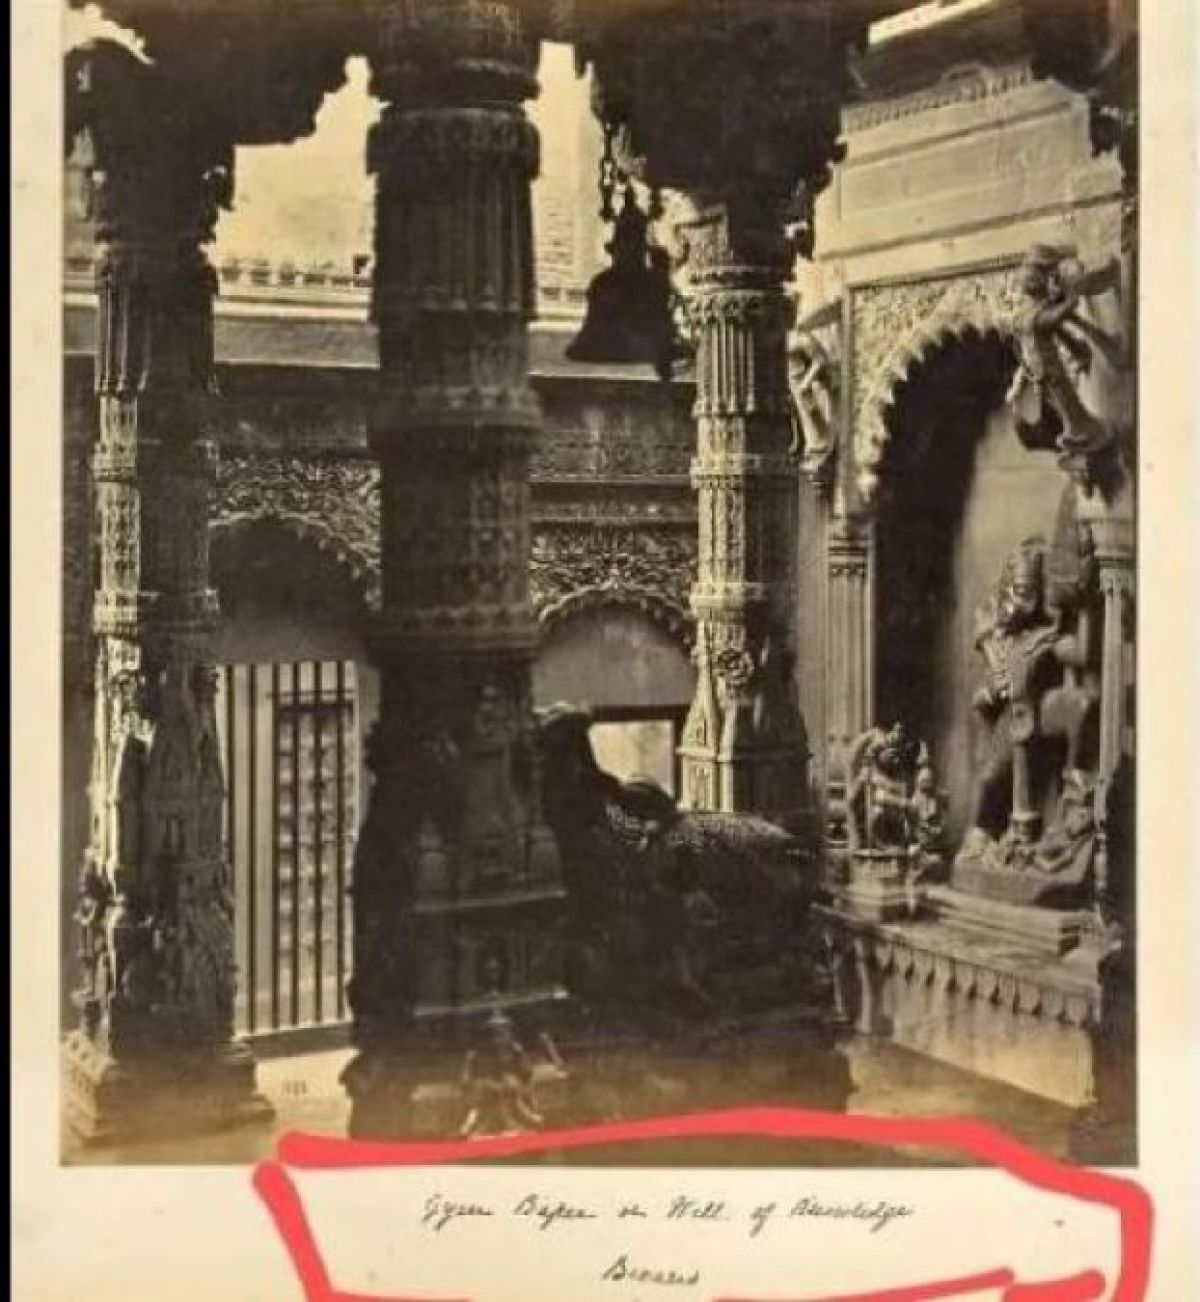 फिर वायरल हुई ज्ञानवापी मस्जिद की पुरानी तस्वीरें, जो चीख-चीखकर बता रही है 'मस्जिद नहीं, मंदिर है ज्ञानवापी'